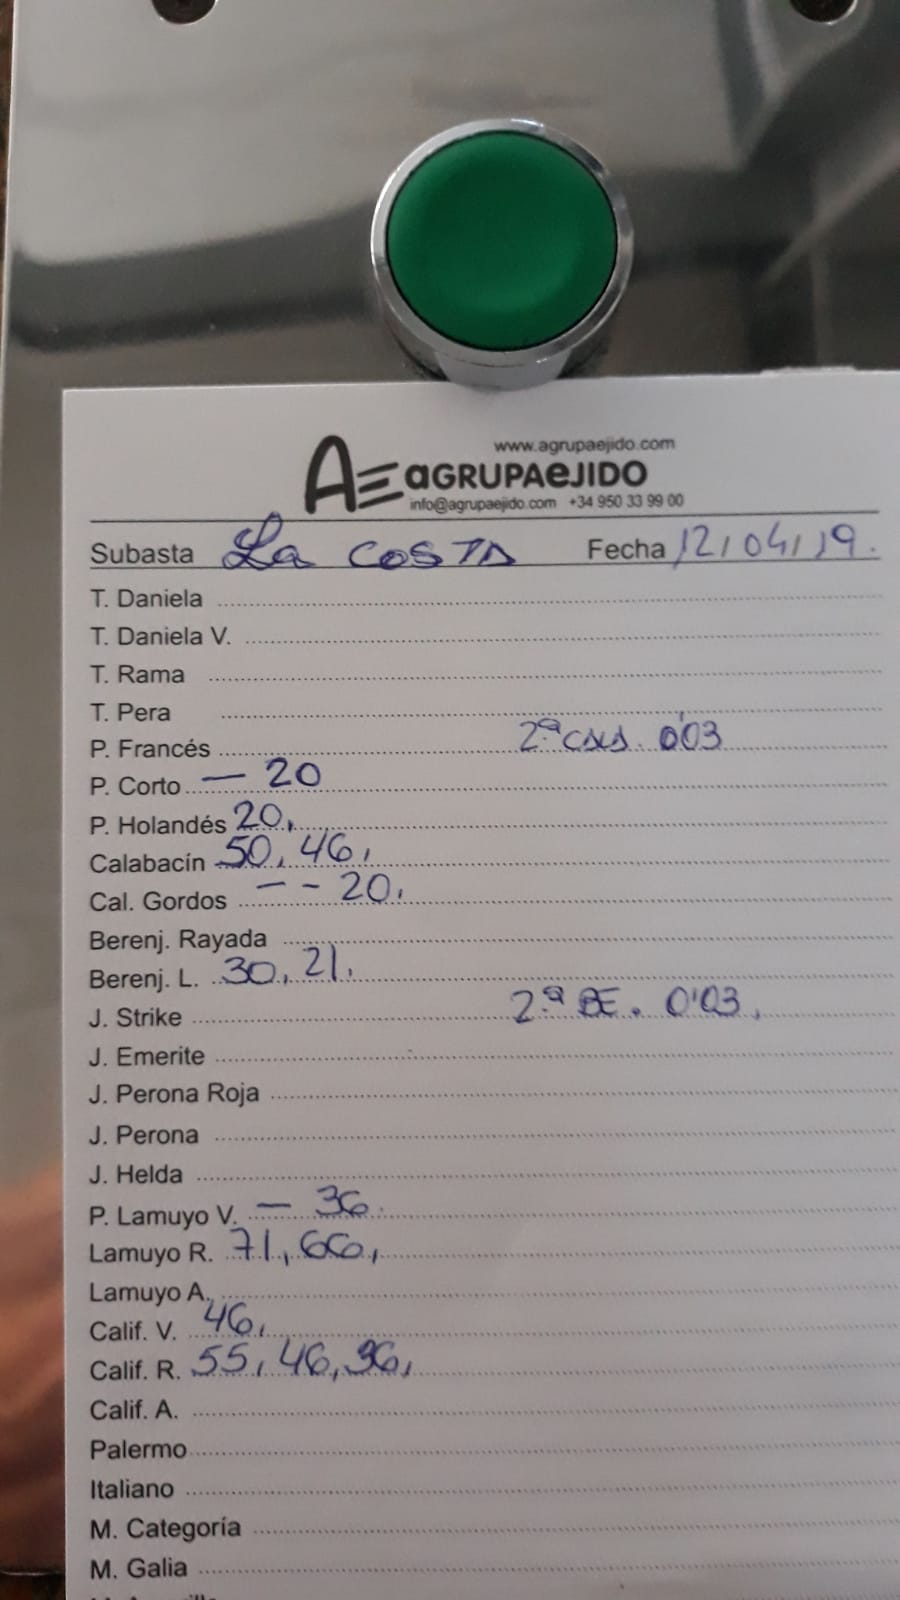 Subasta hortofrutícola AgrupaEjido La Costa 12 de Abril 2019